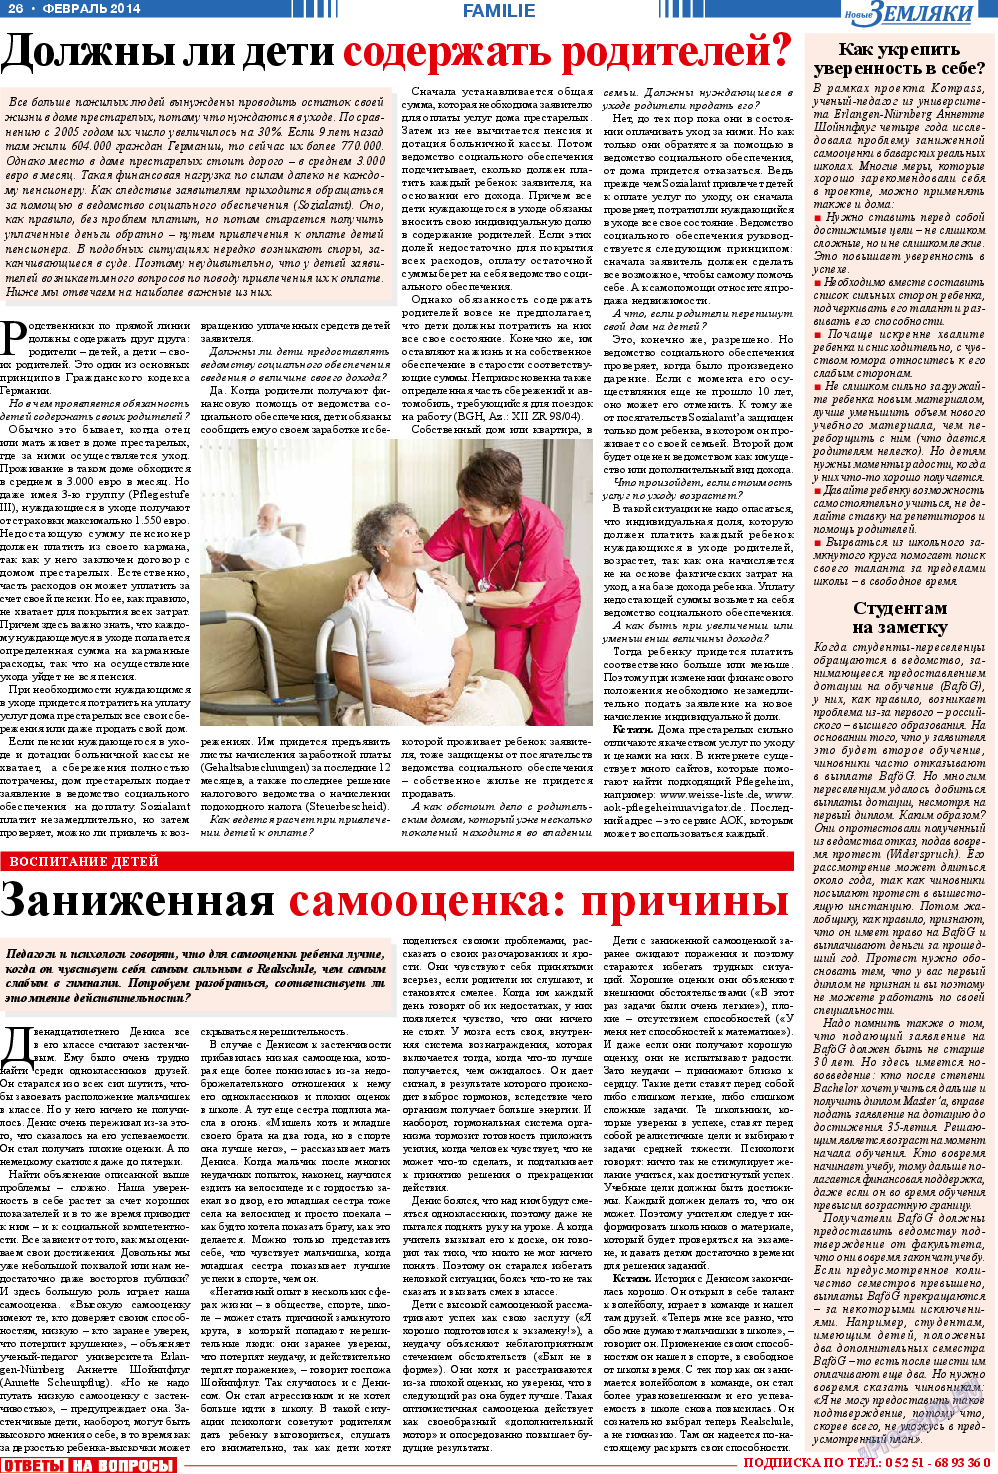 Новые Земляки, газета. 2014 №2 стр.26